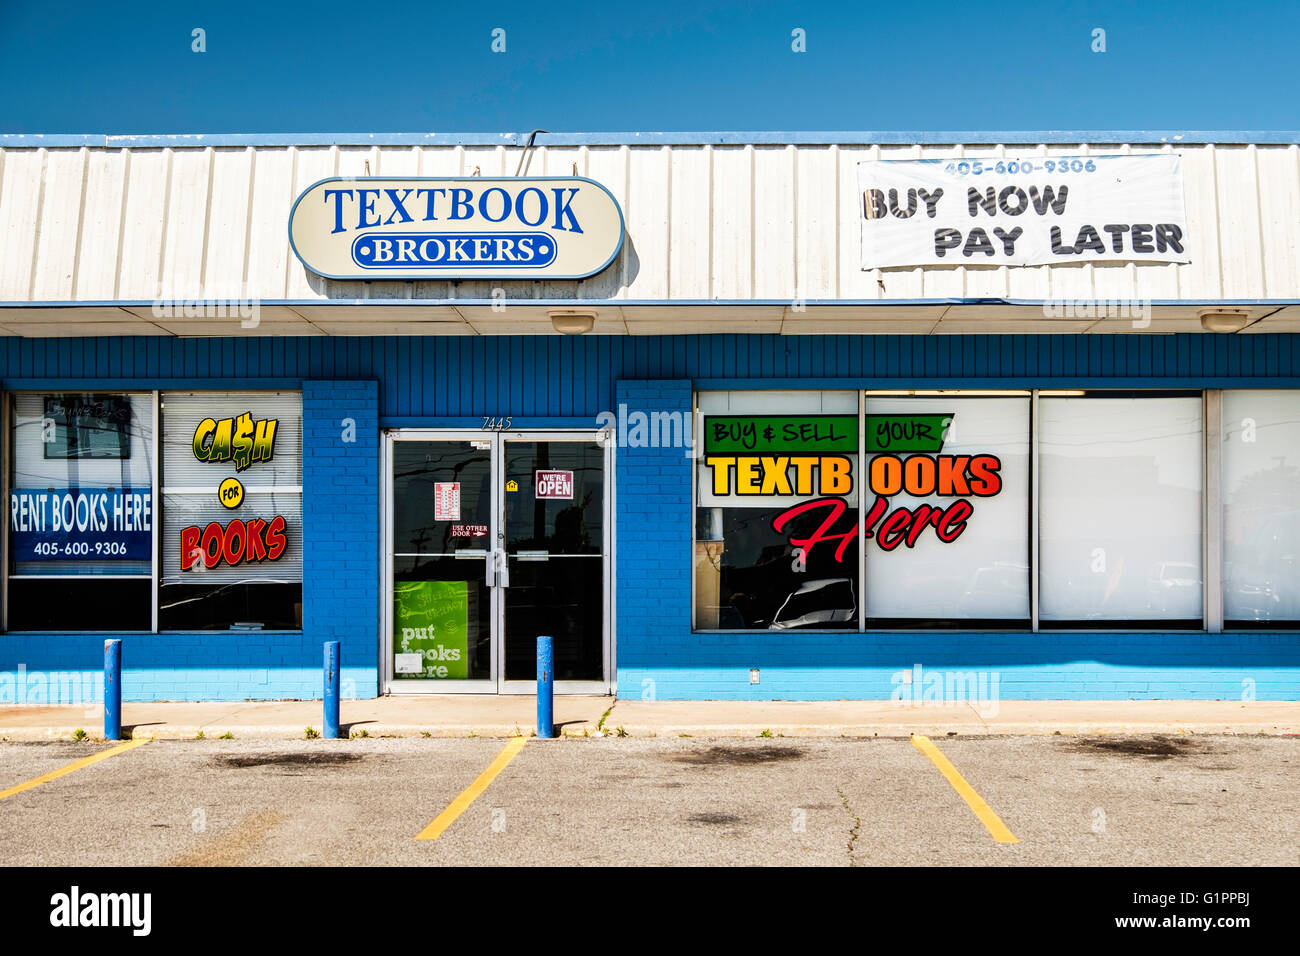 Die Schaufenster und Schaufenstergestaltung Werbung eine Lehrbuch Vermittlung, Kauf und Verkauf von Lehrbüchern. USA. Stockfoto